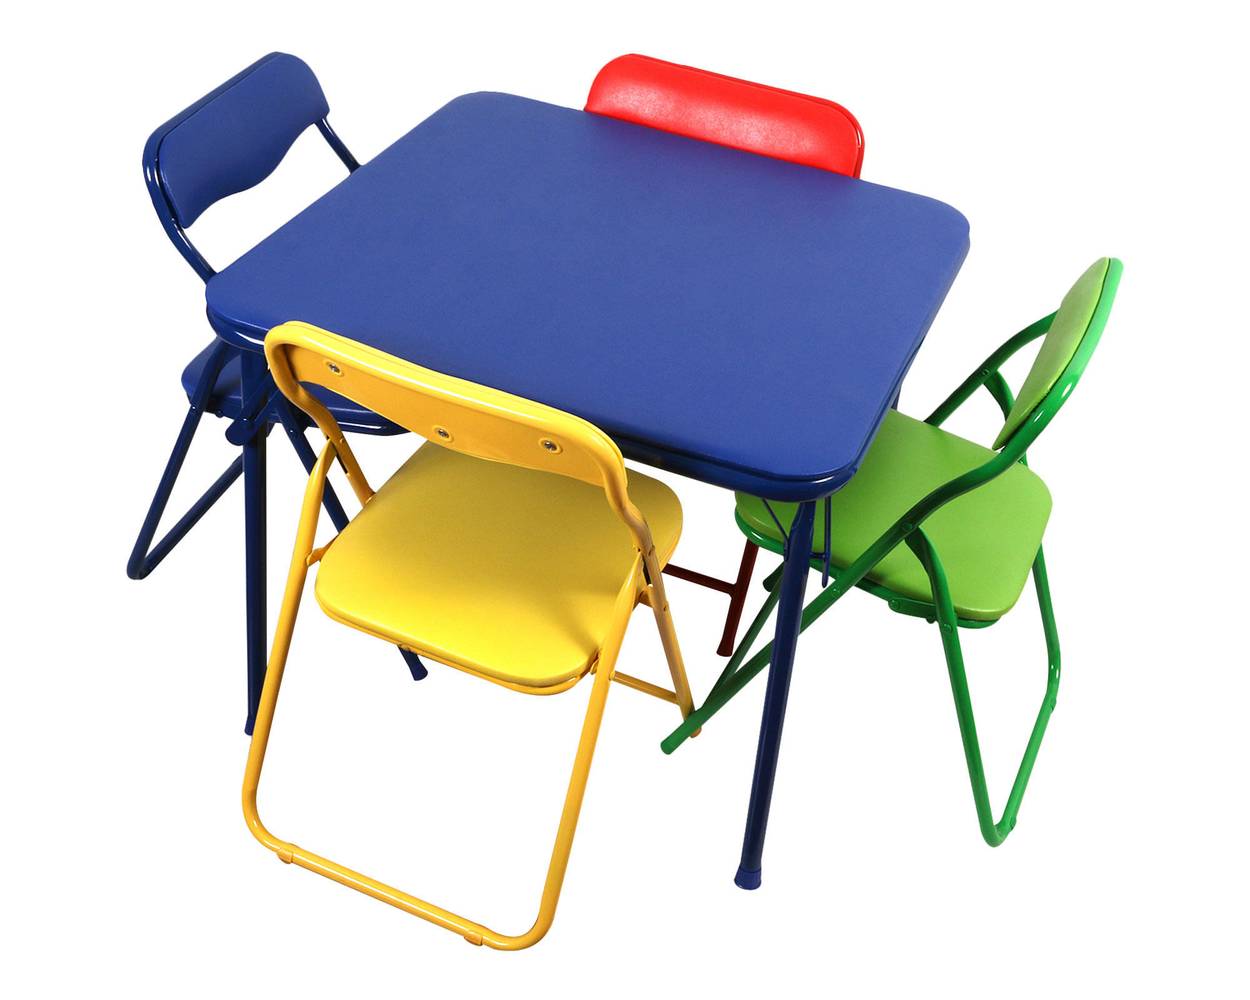 M+design set infantil mesa + silla colores (1 set)